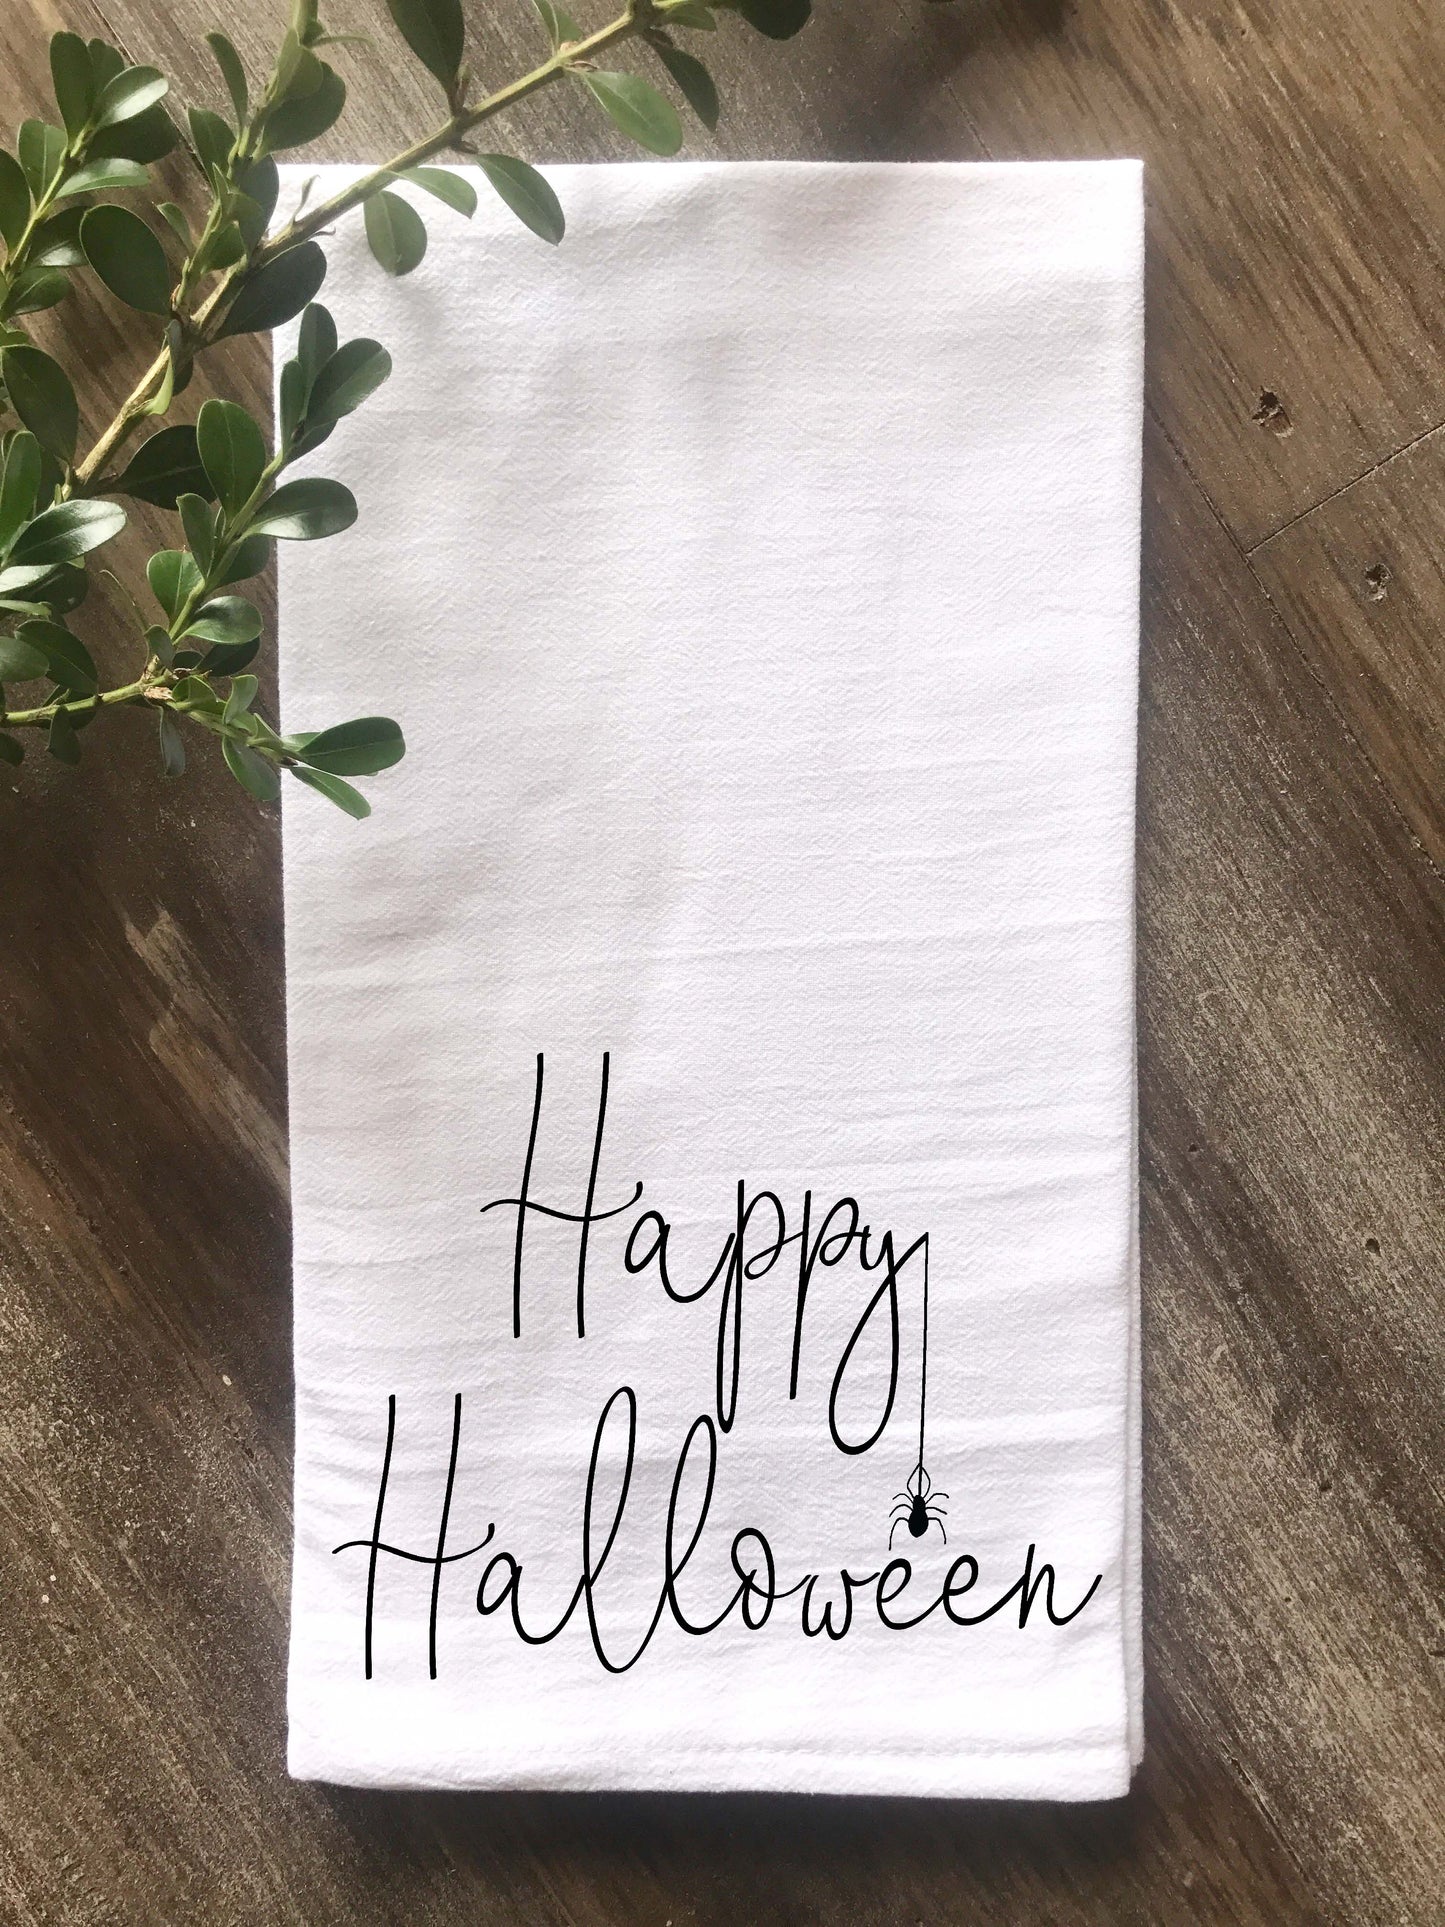 Happy Halloween with Spider Tea Towel